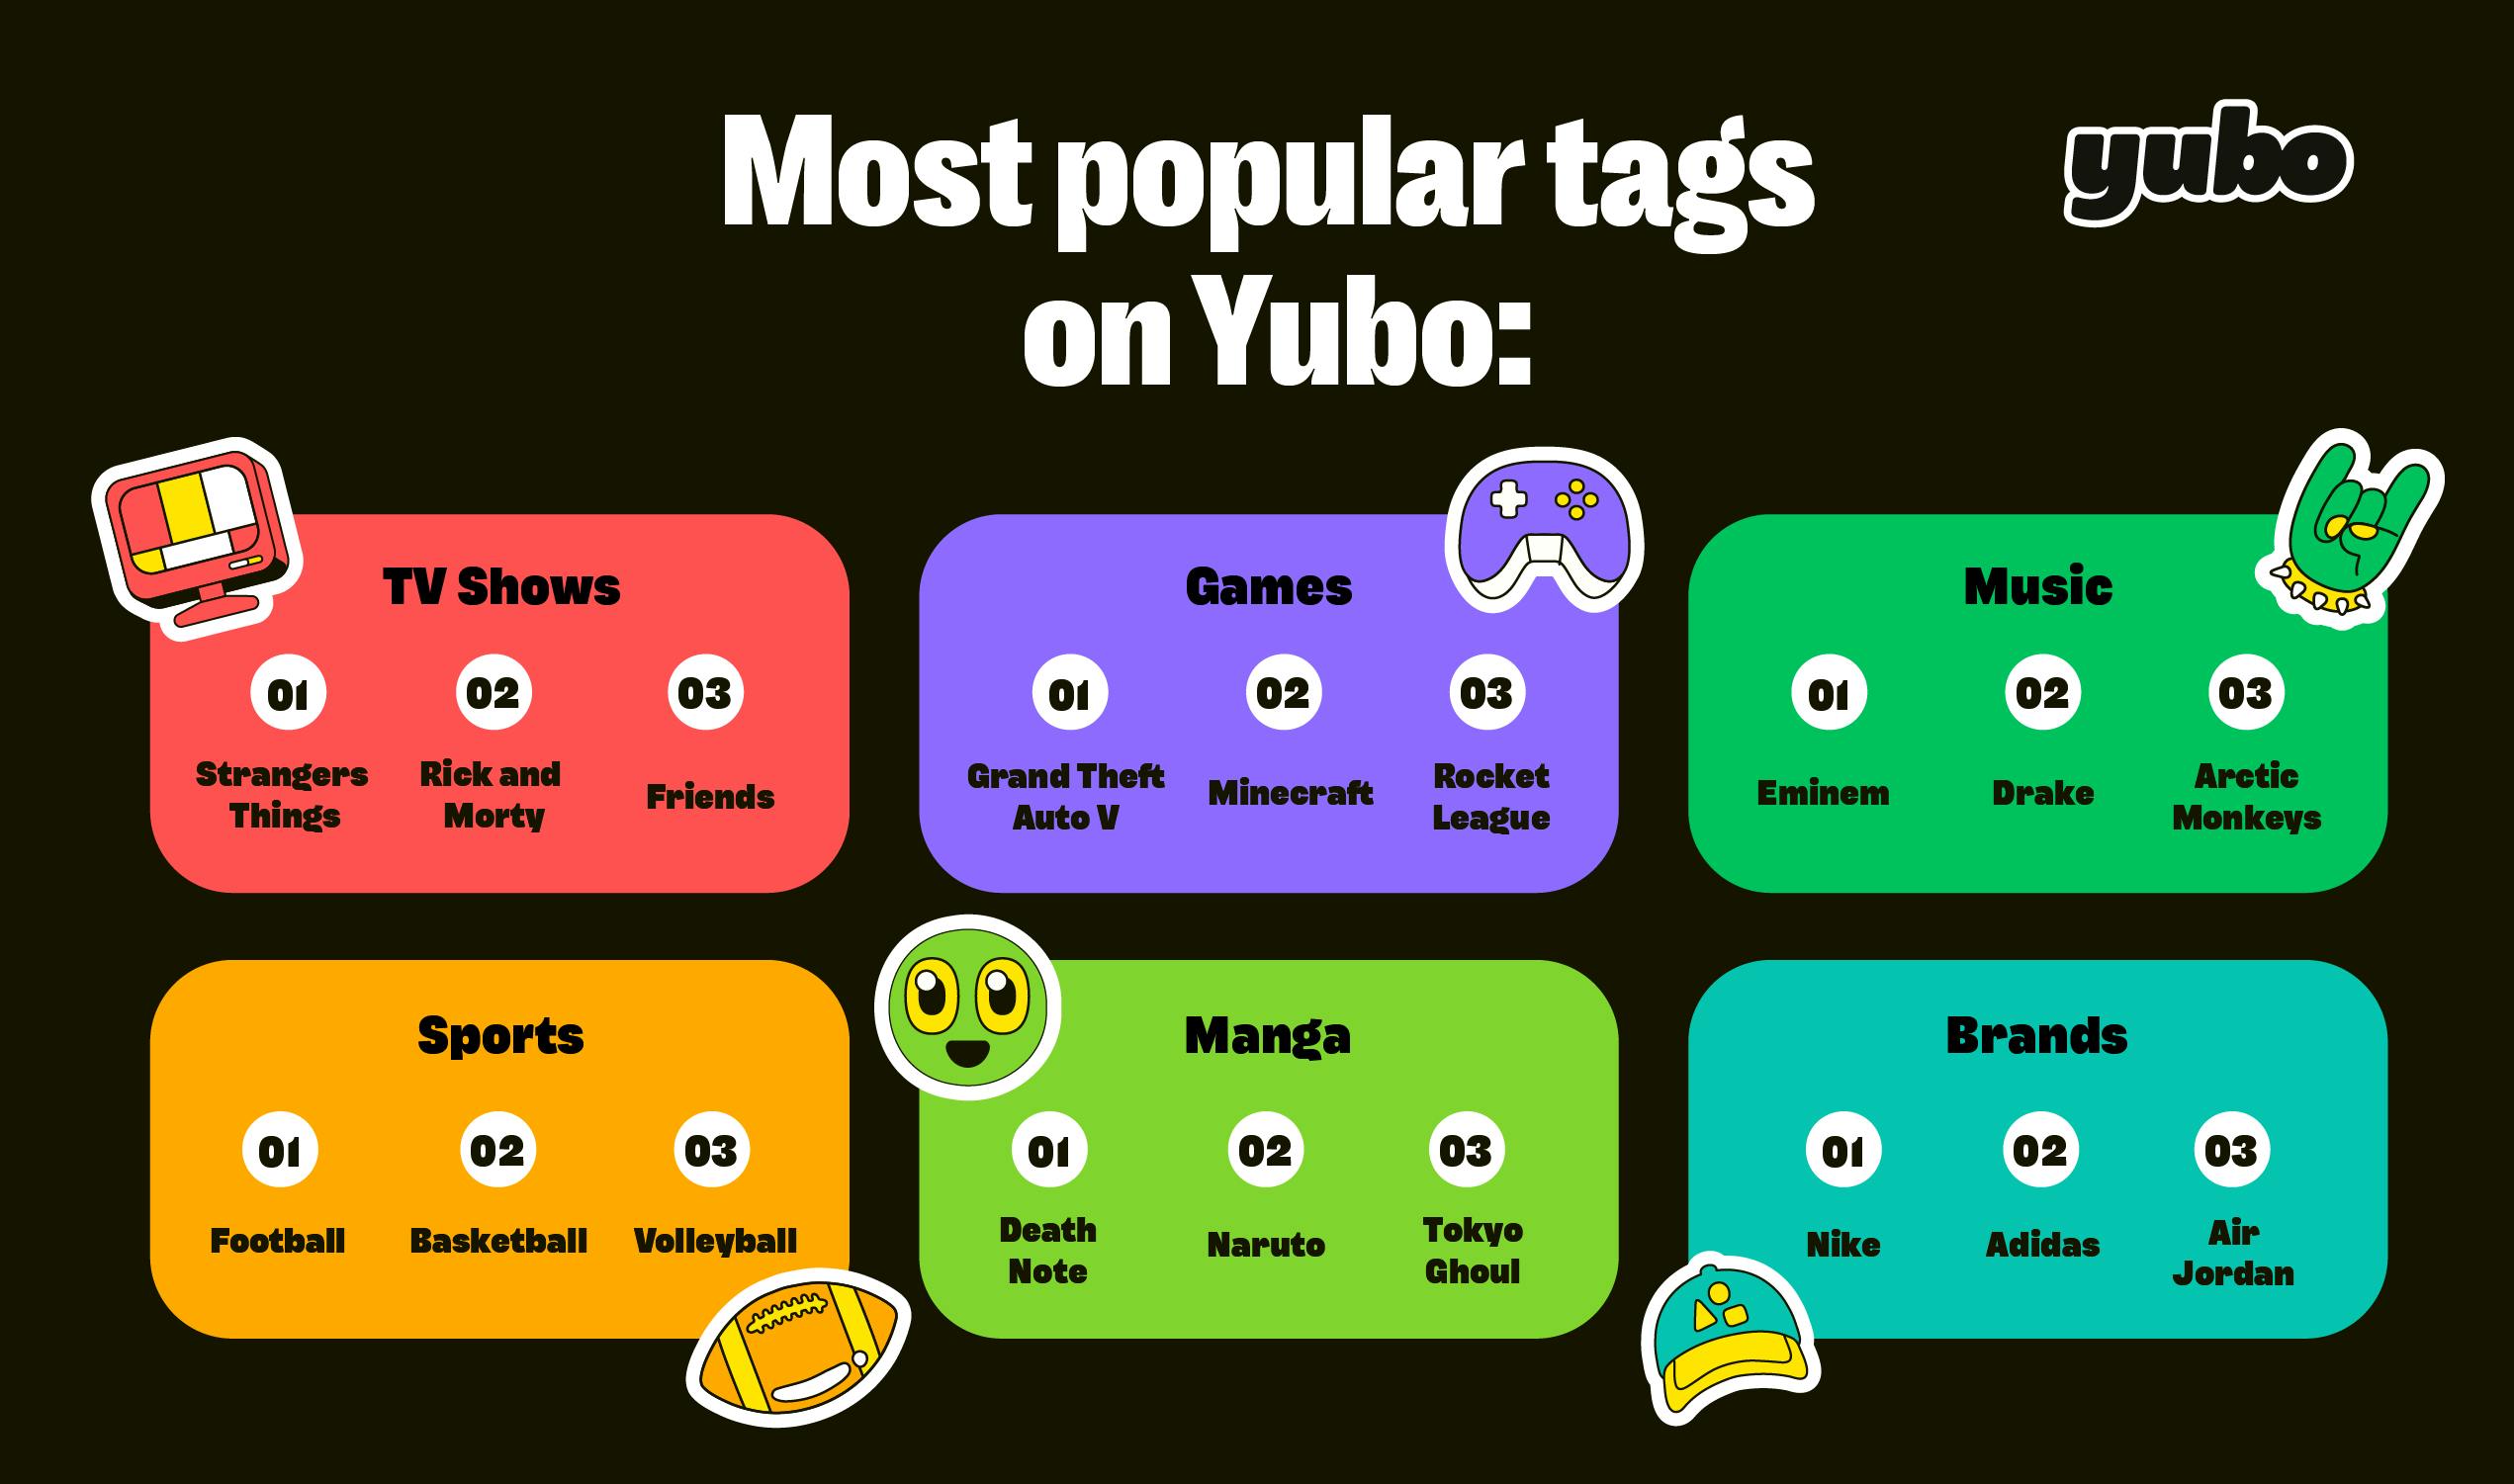 Mest populære tagger på Yubo. 6 kategorier er til stede: Tv-programmer, spil, musikk, sport, manga og merkevare